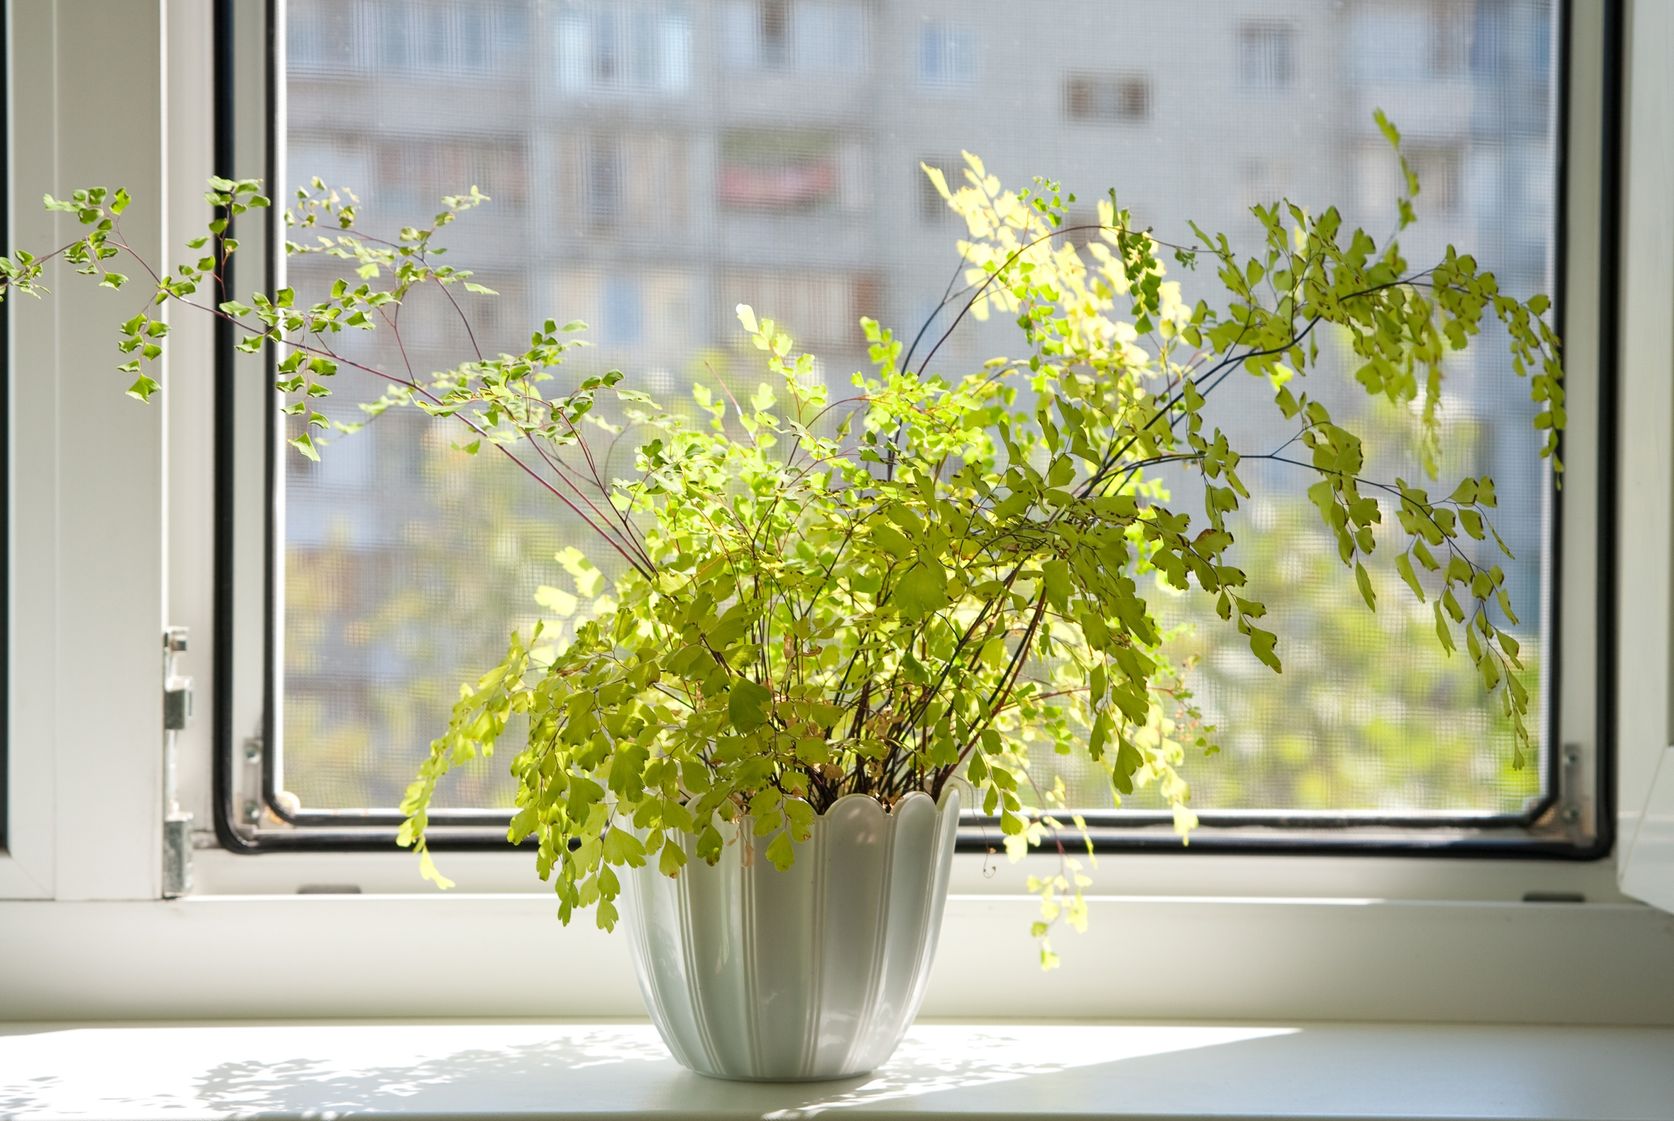 Houseplant fern sitting in window sill